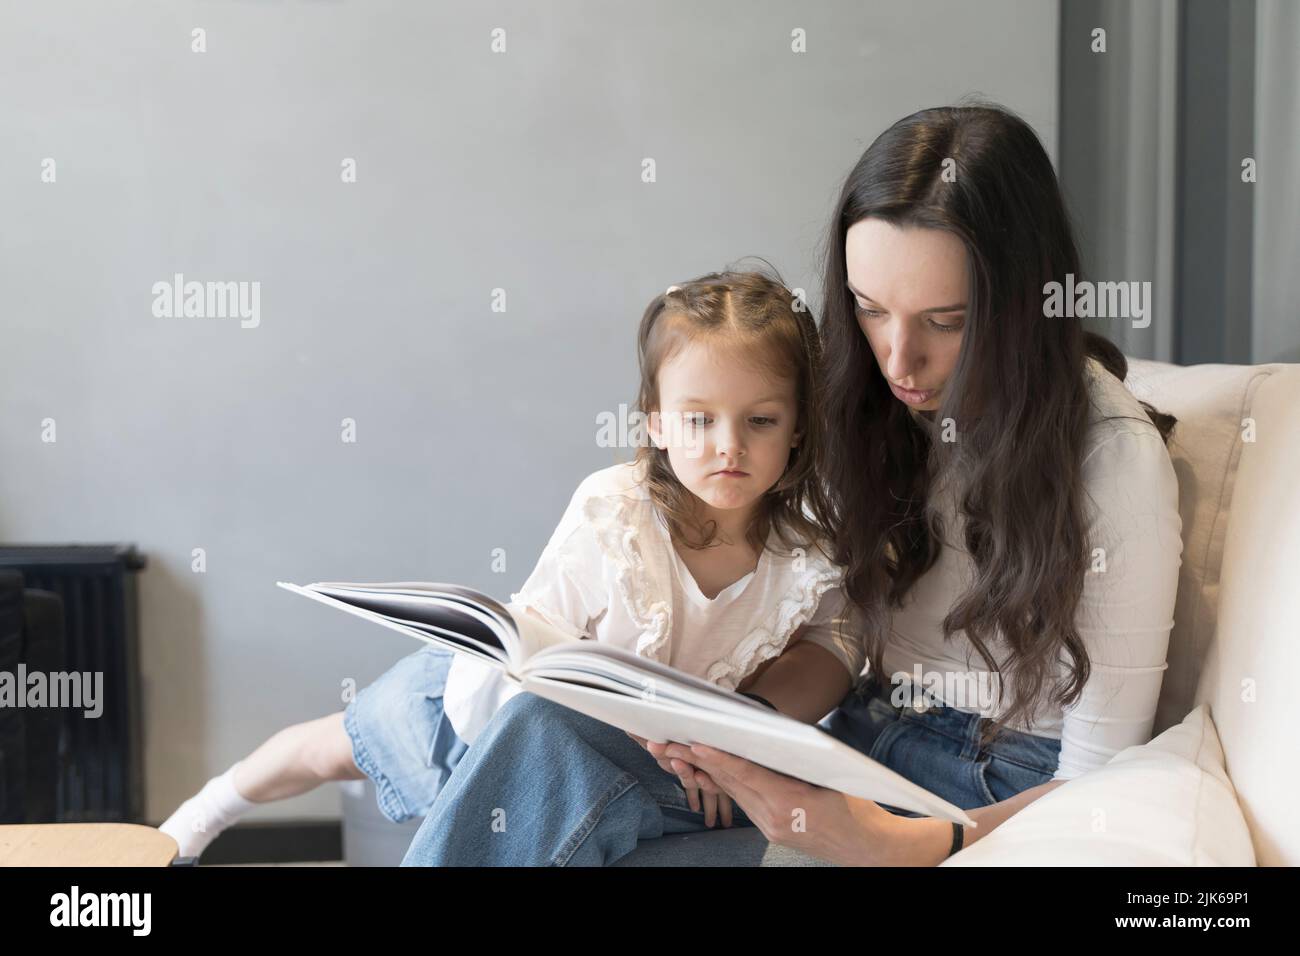 Mamá e hija están leyendo un libro en el sofá. Estudio y actividades con niños en el hogar, desarrollo mental, tiempo libre con niños. Fotografías de alta calidad Foto de stock